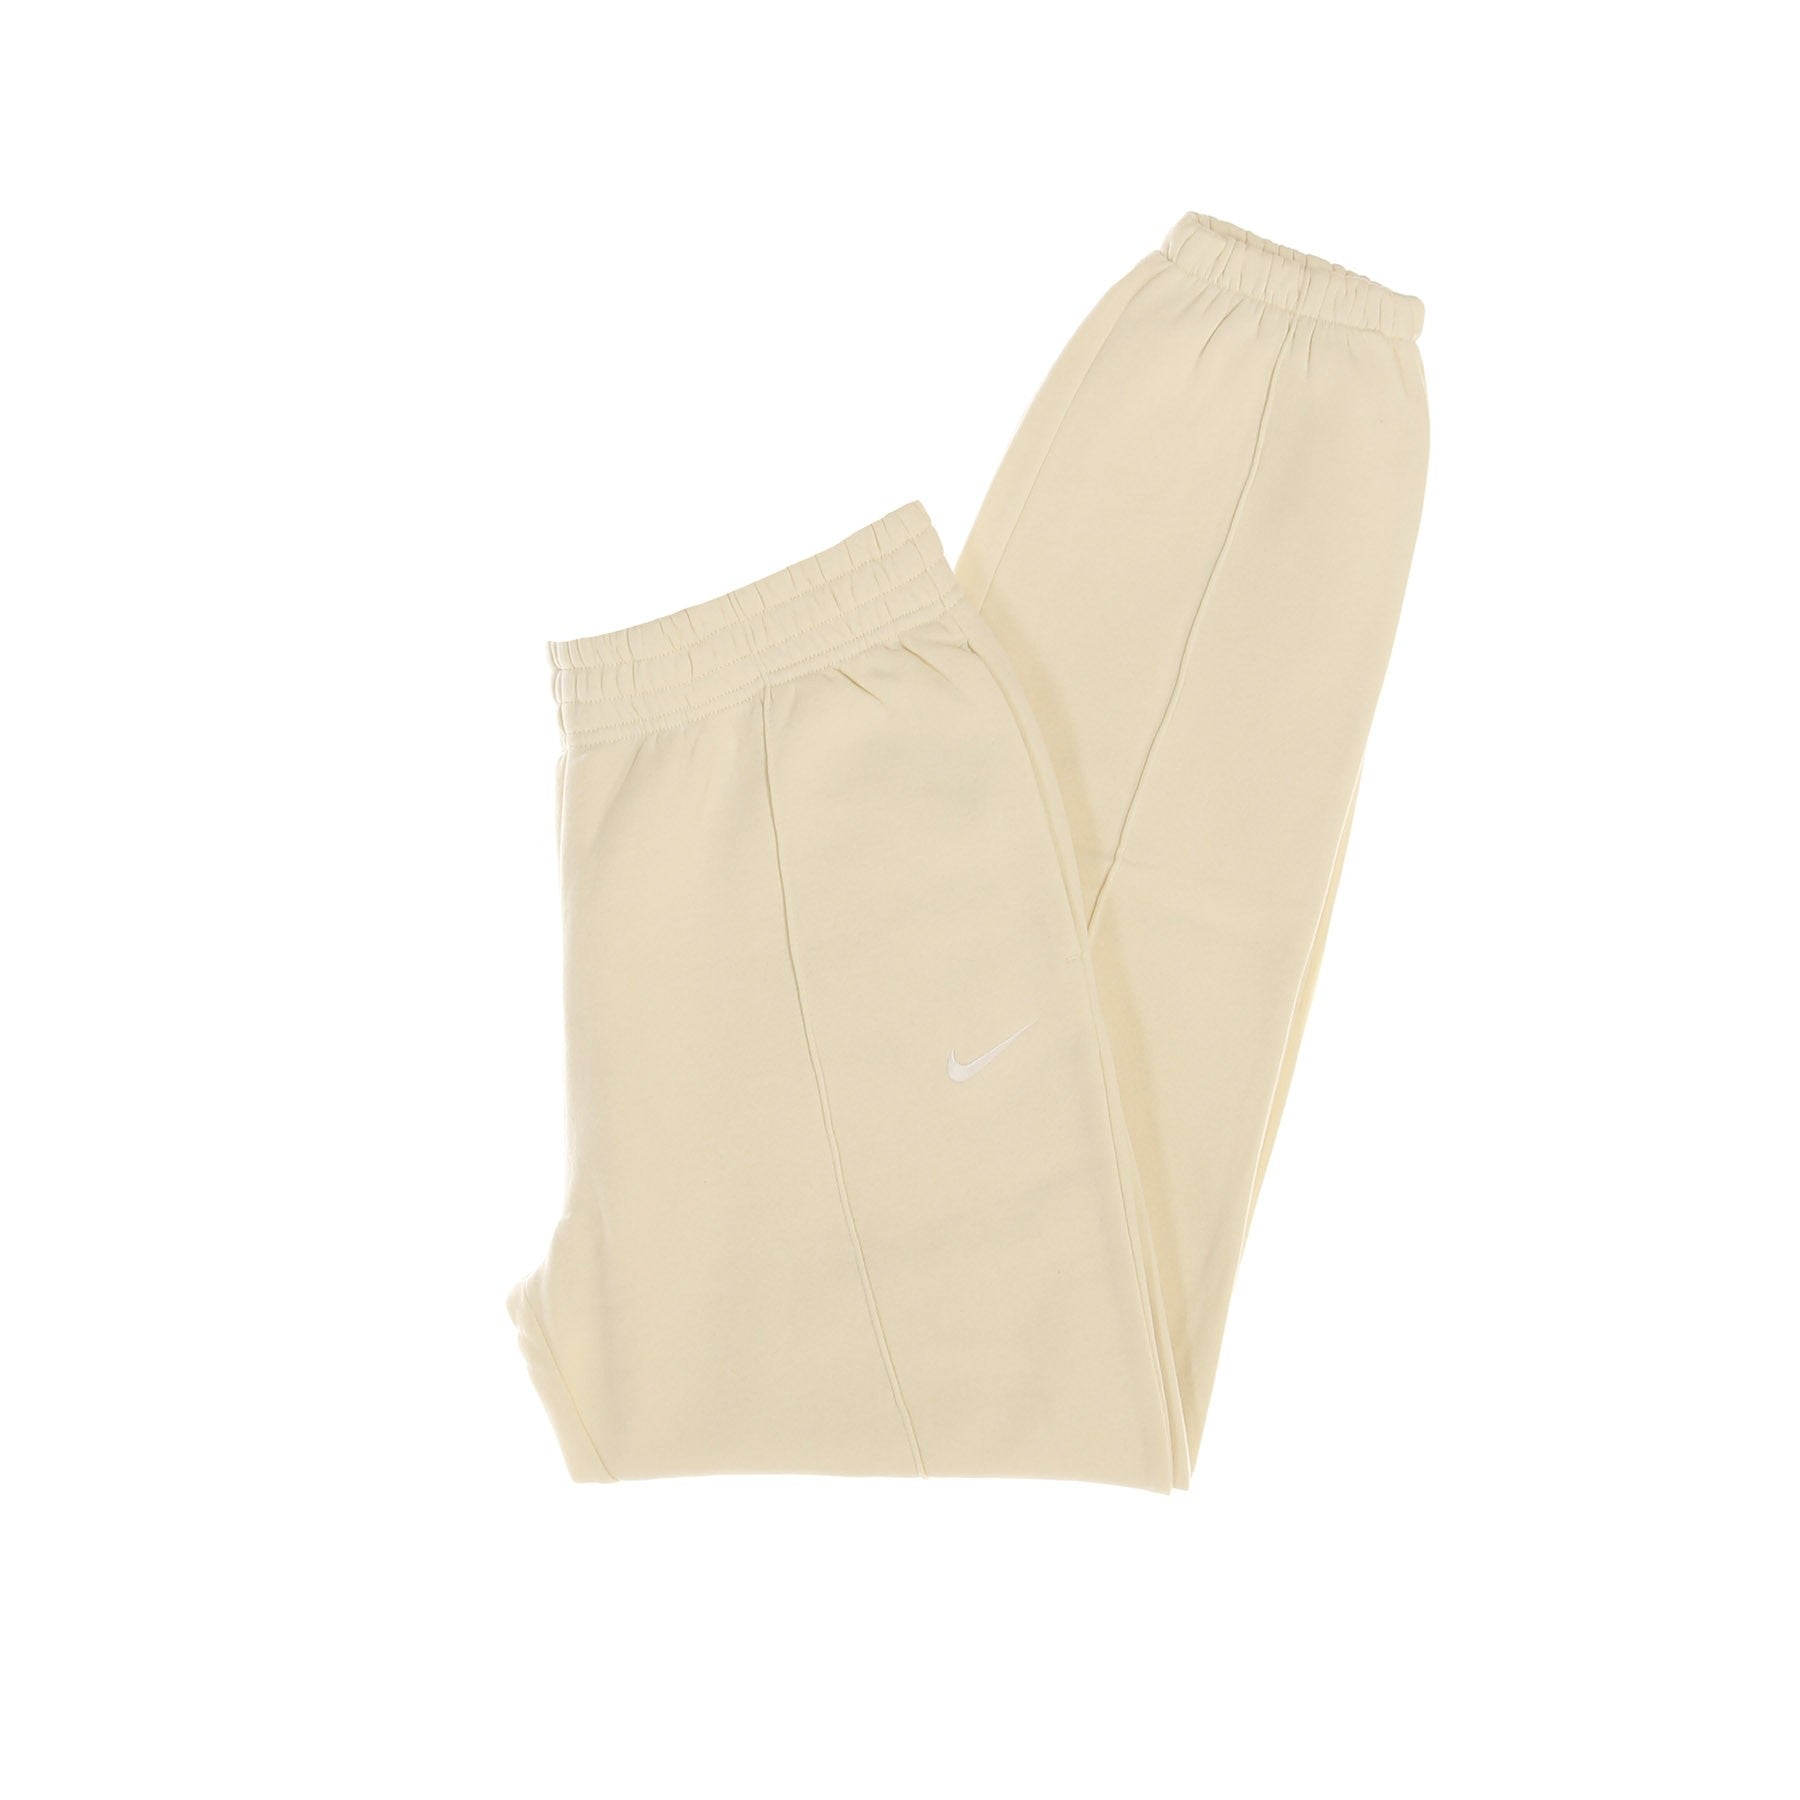 Pantalone Tuta Felpato Donna Essential Trend Coconut Milk/white BV4089